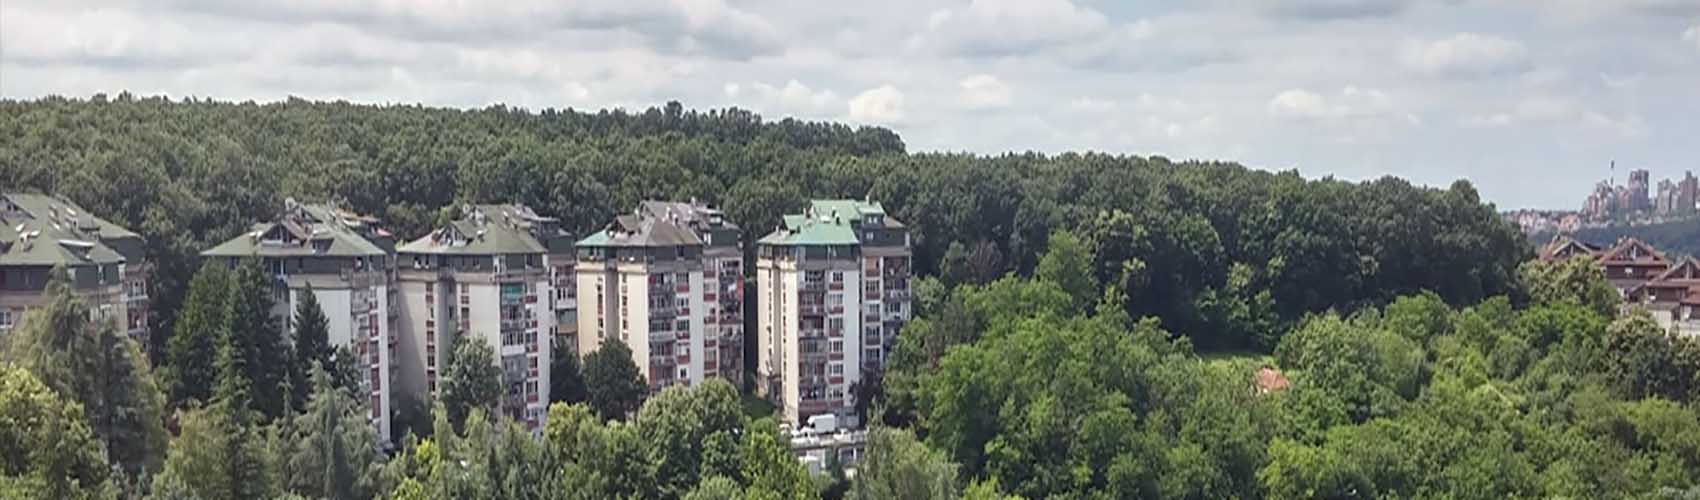 Kasko osiguranje Beograd | Miljakovac